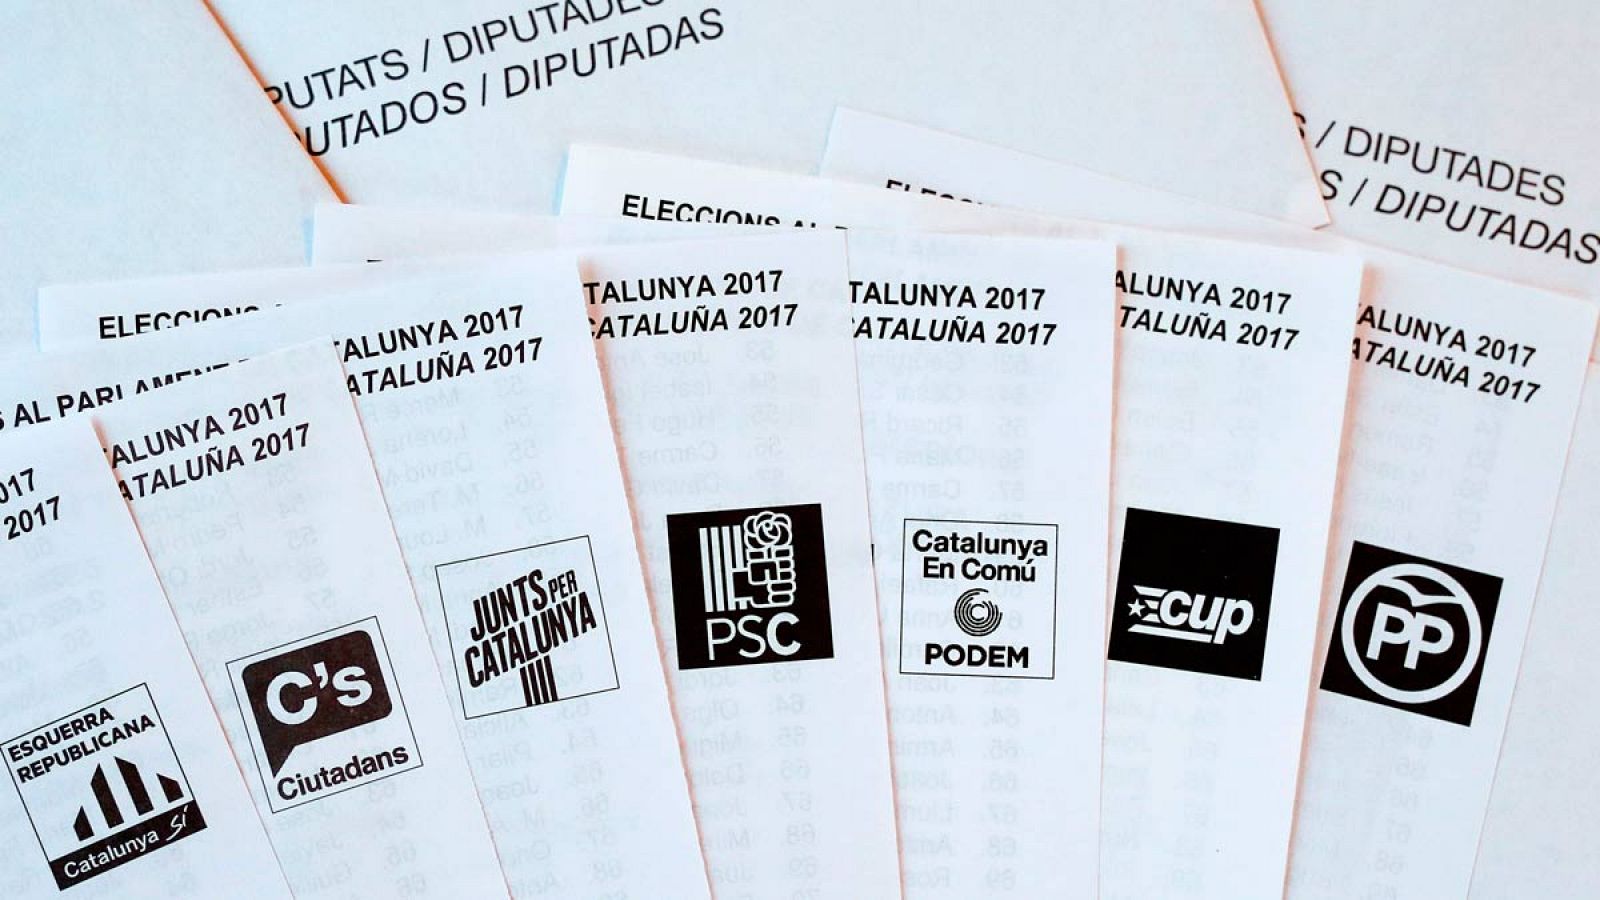 Las siete principales fuerzas que concurren a las elecciones en Cataluña.